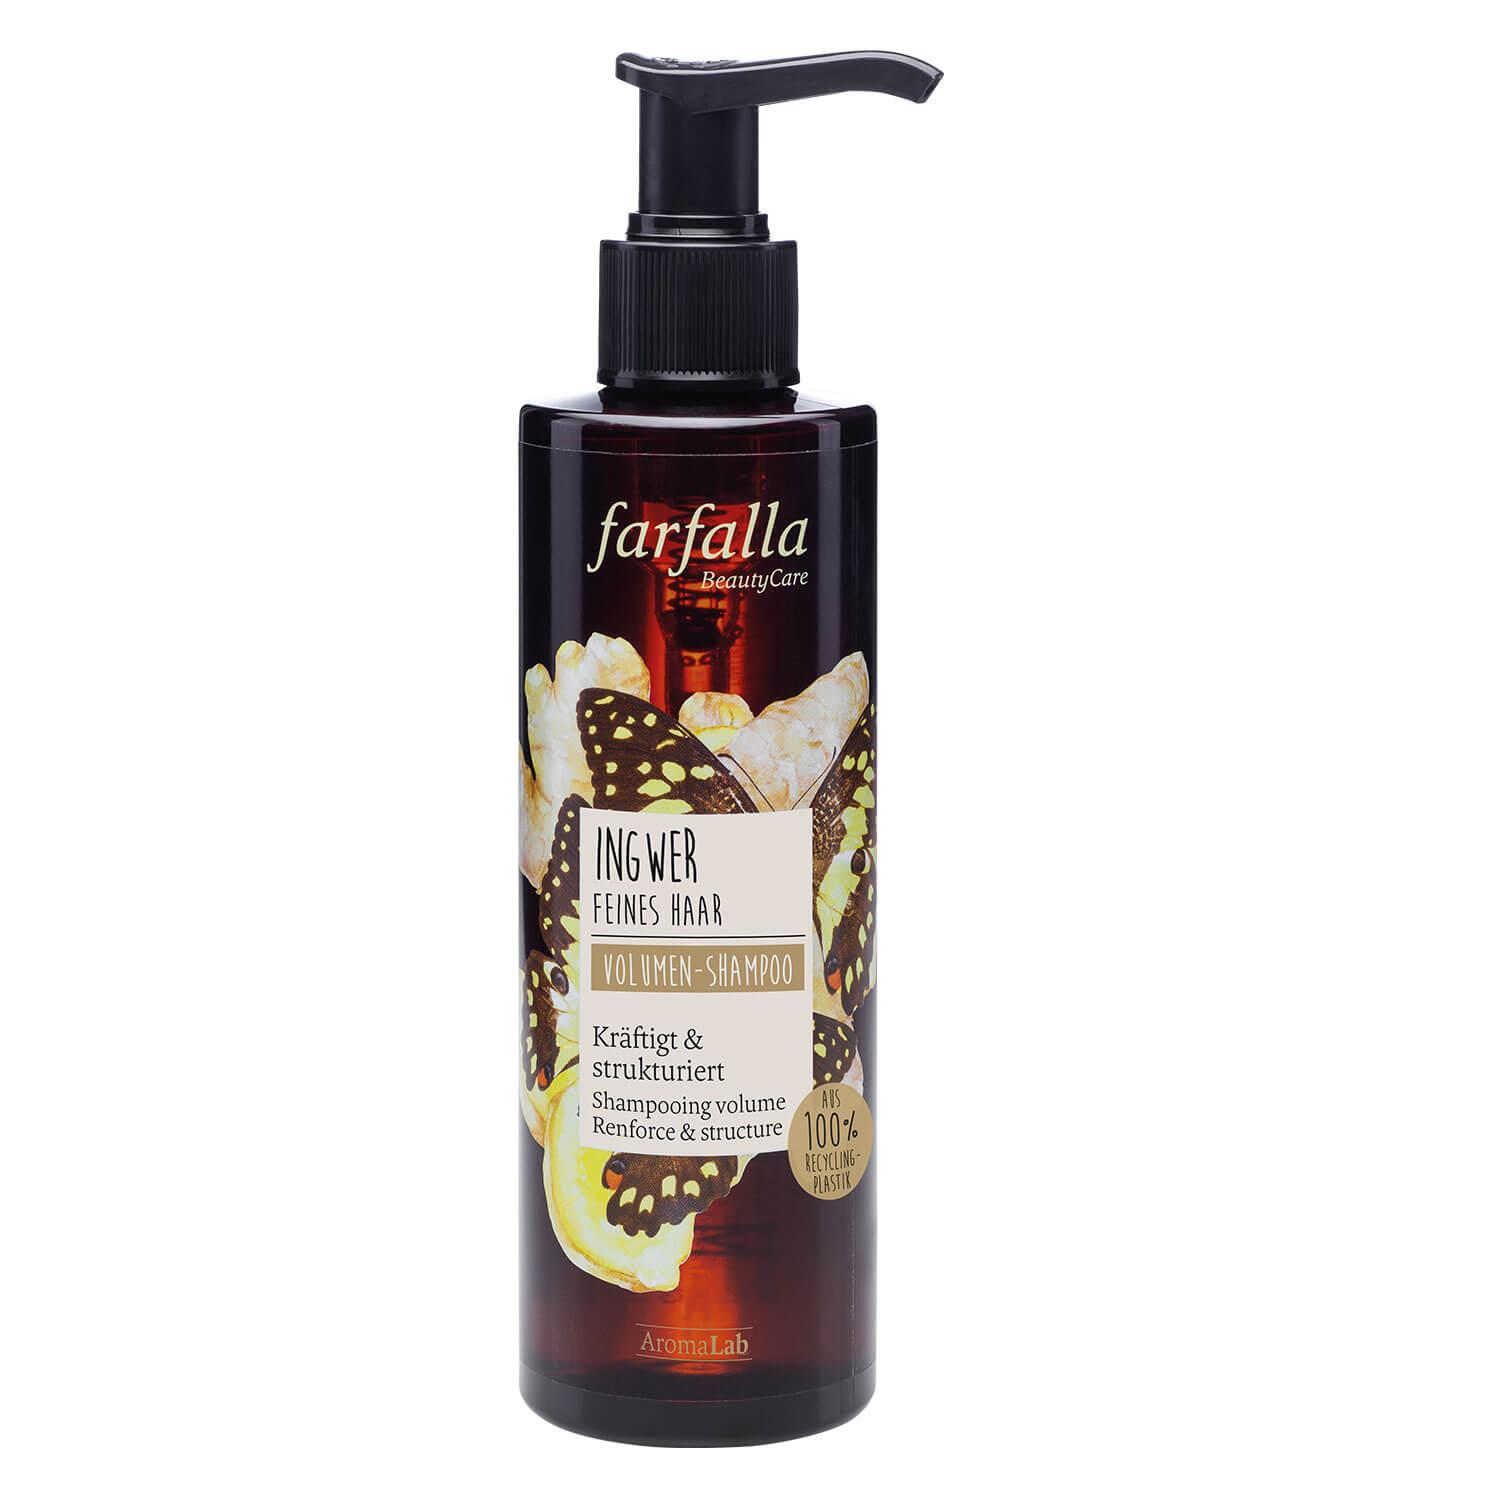 Farfalla Hair Care - Ingwer volume shampoo